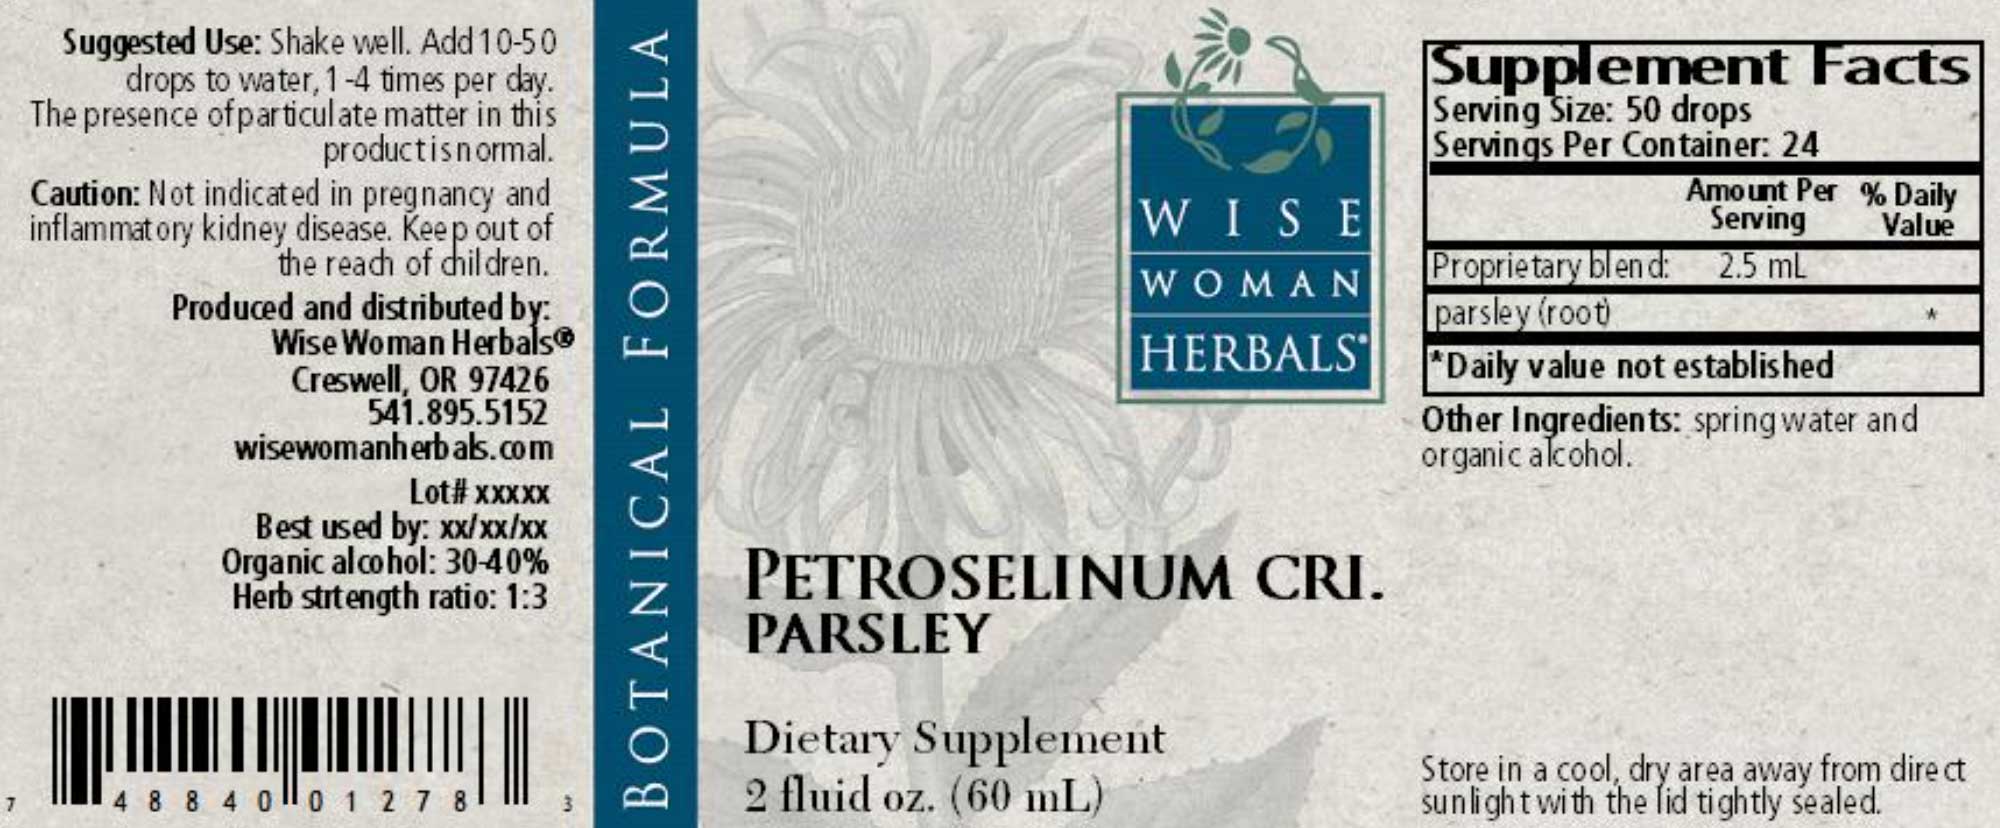 Wise Woman Herbals Petroselinum Crispum Parsley Label